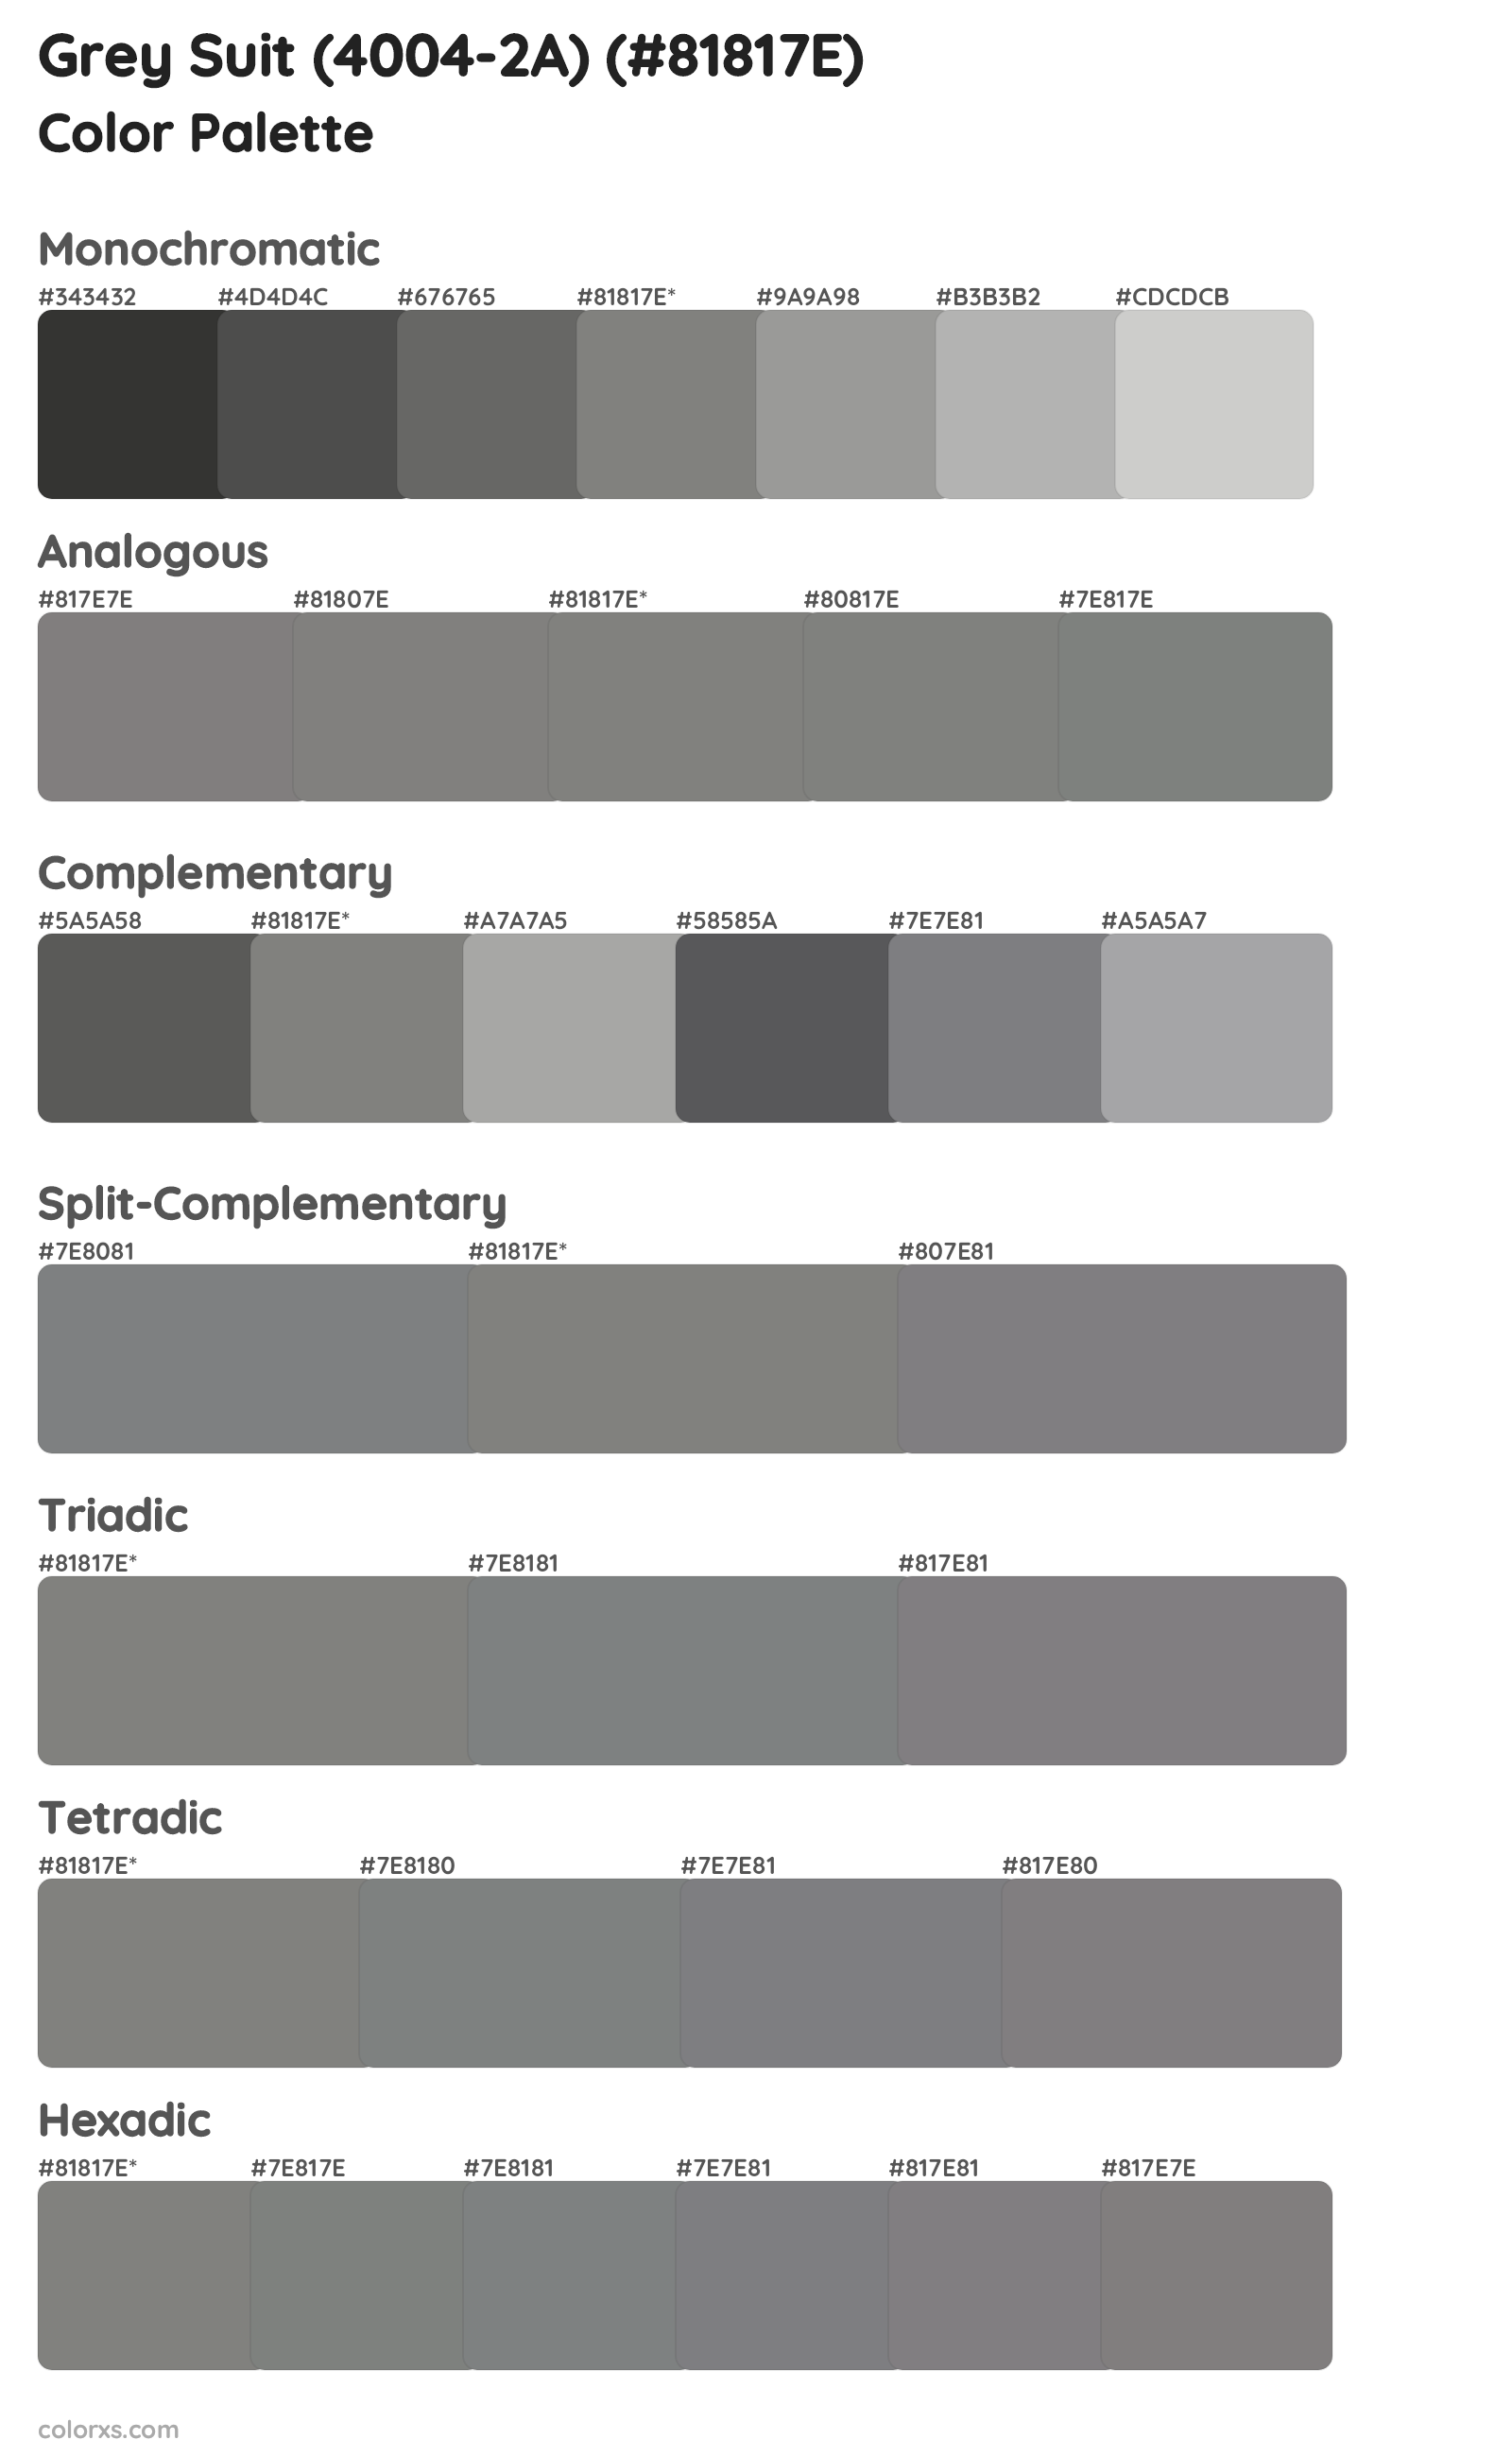 Grey Suit (4004-2A) Color Scheme Palettes